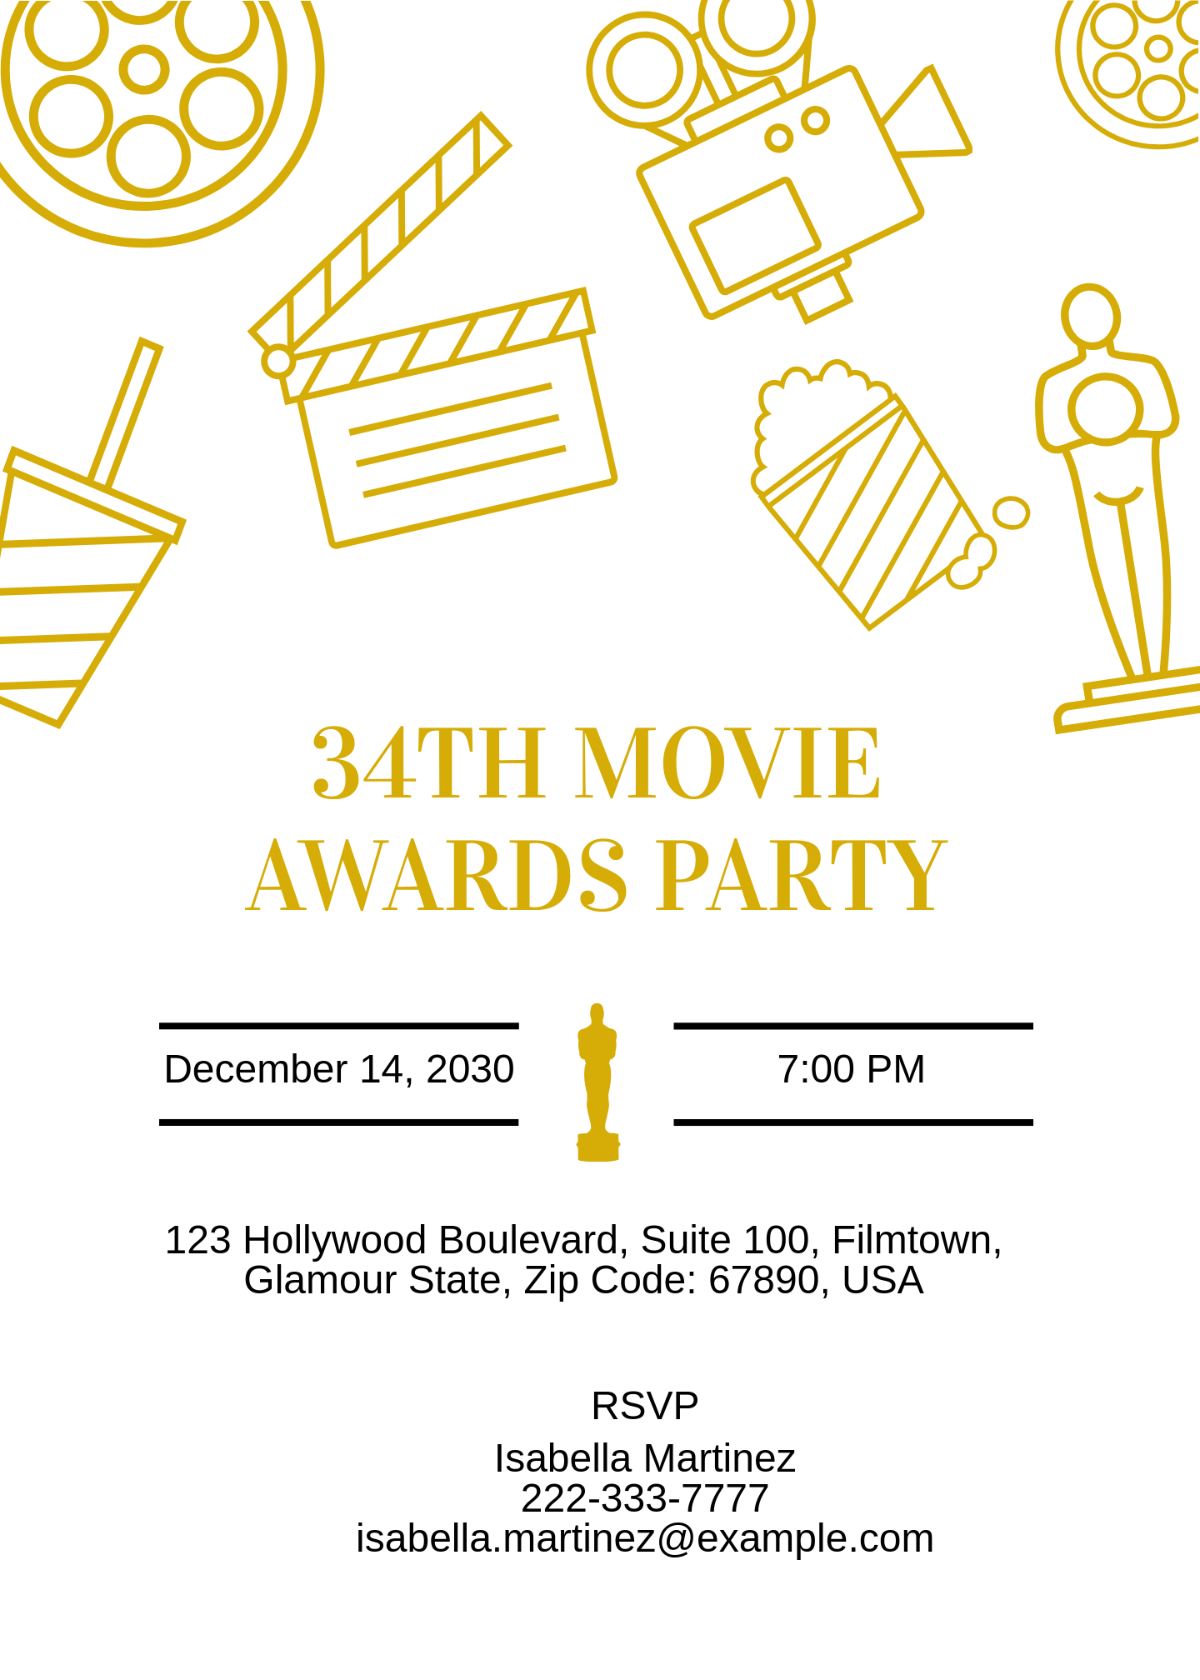 Movie Awards Party invitation